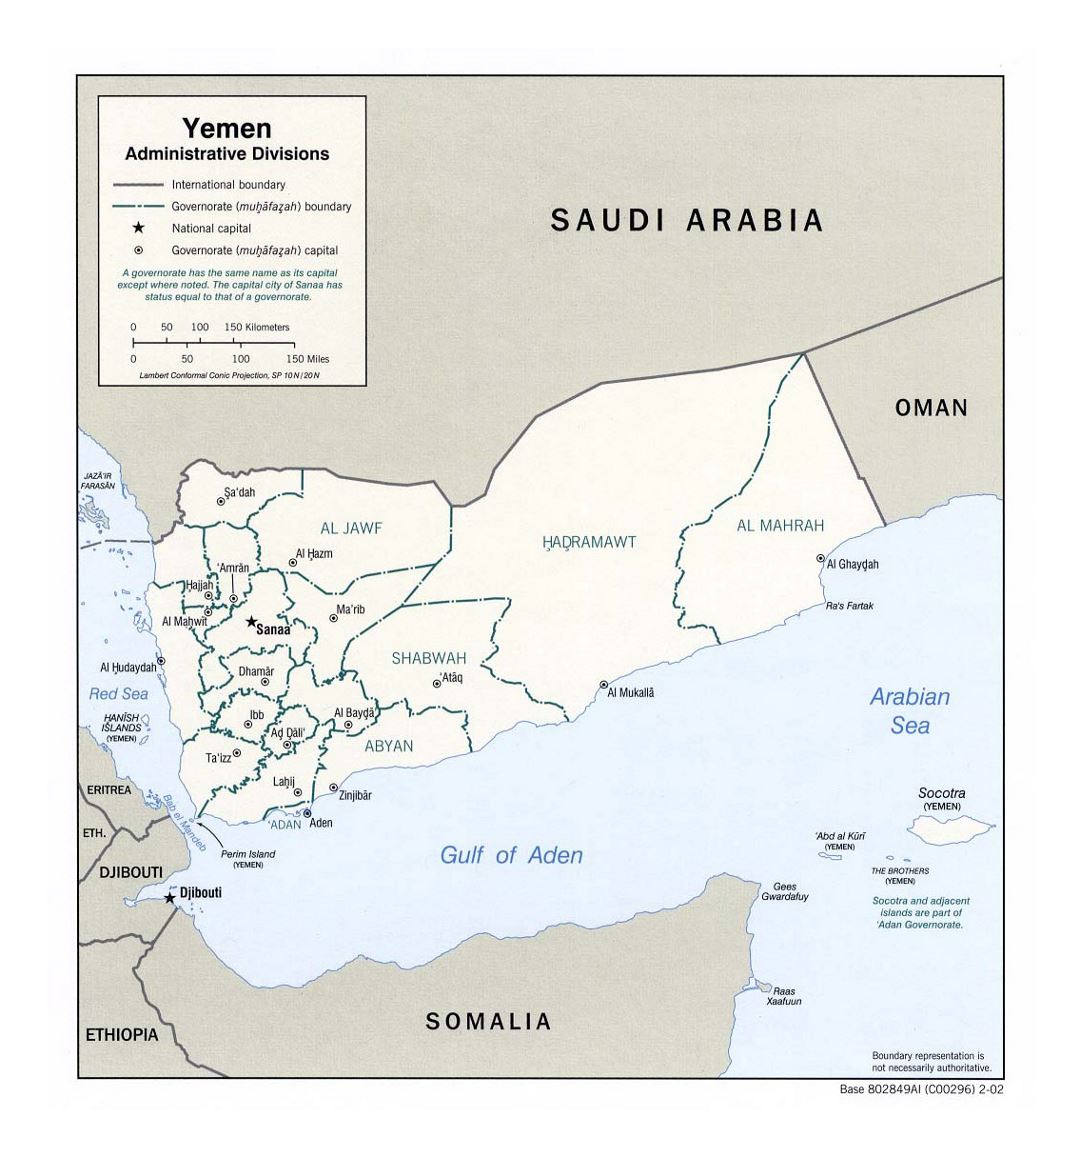 Detallado mapa de administrativas divisiones de Yemen - 2002